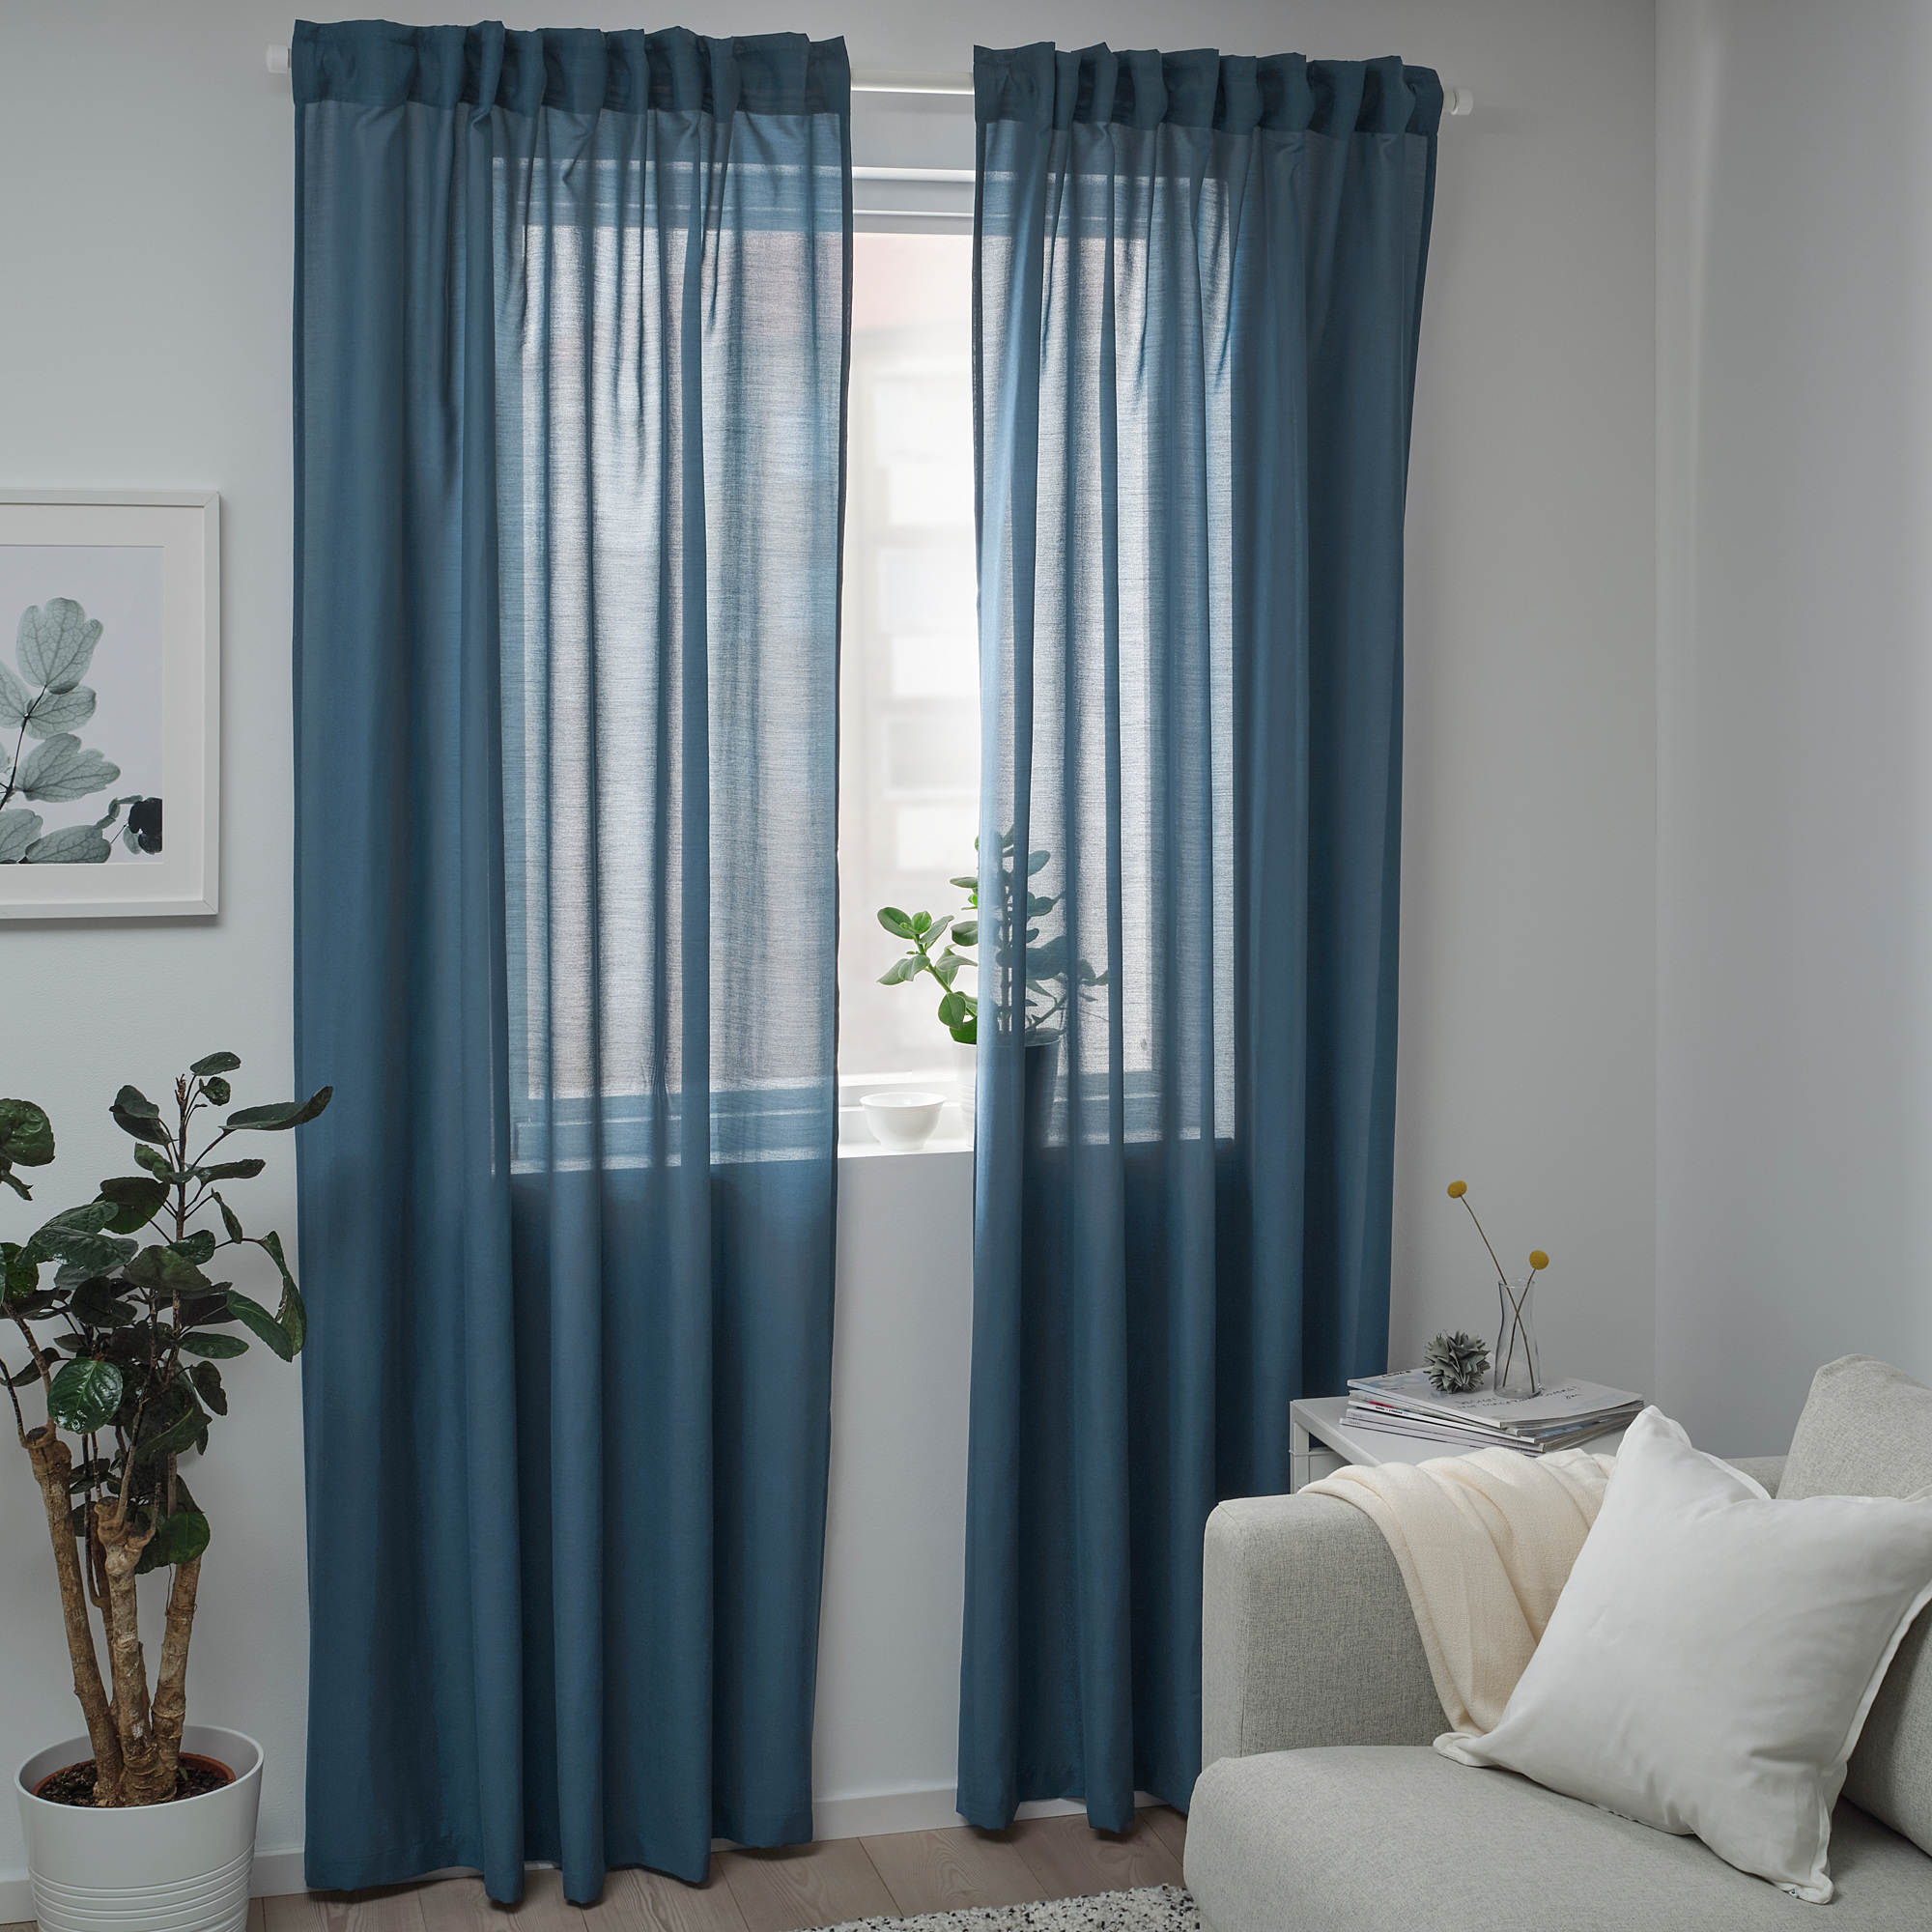 HILJA curtains, 1 pair